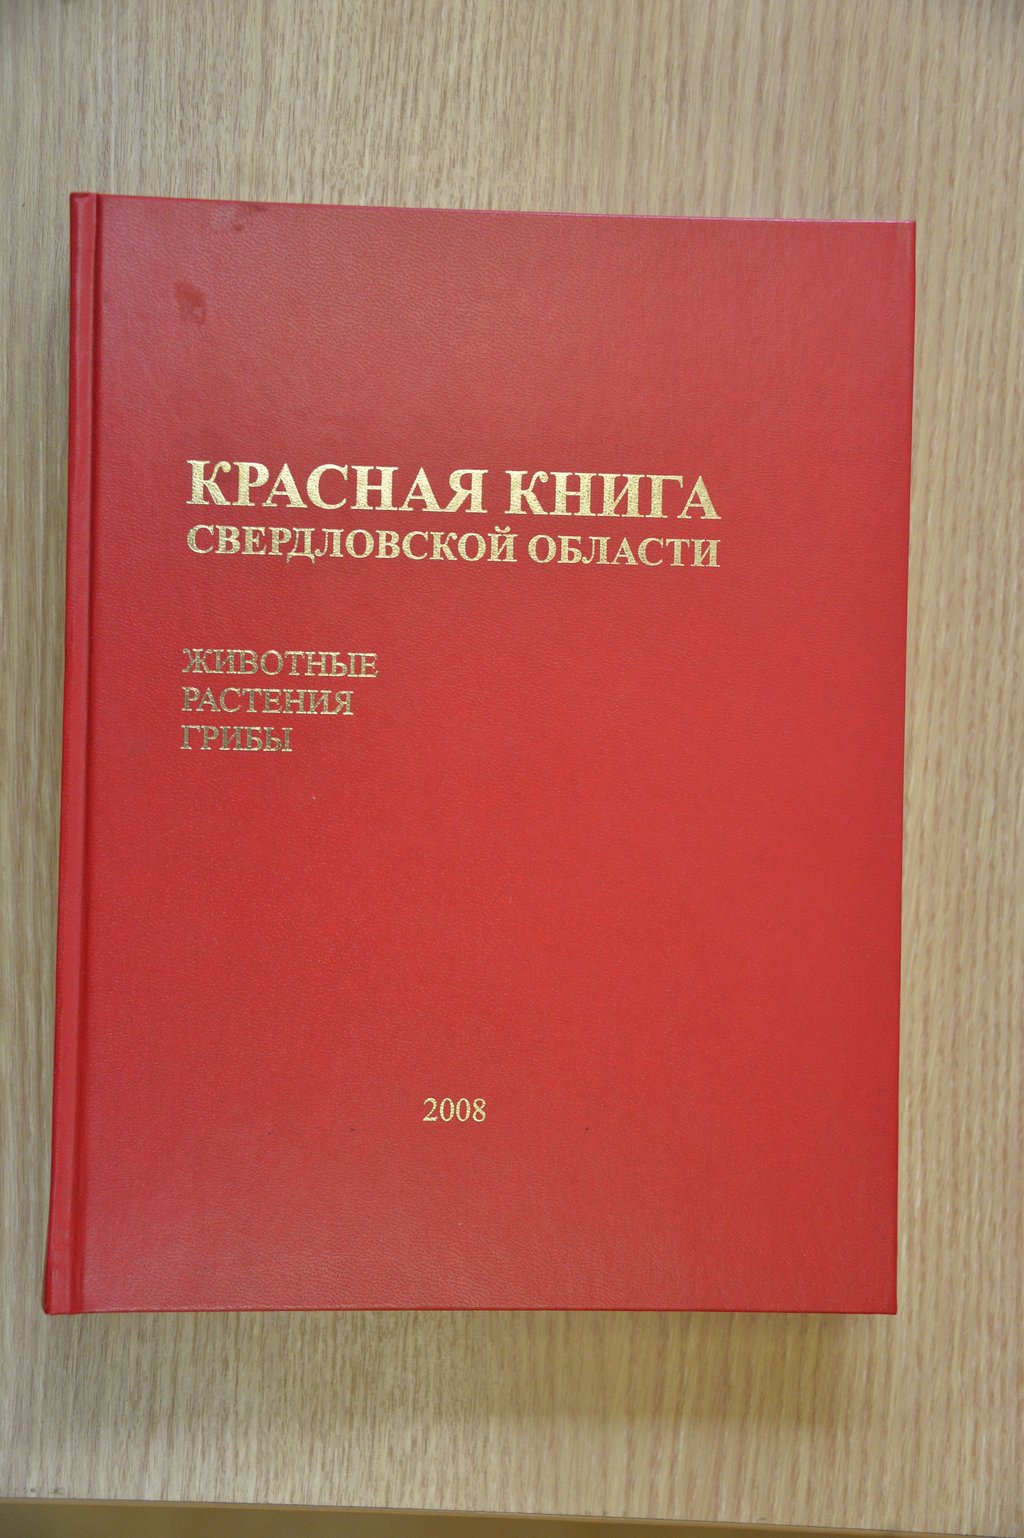 Первое издание Красной книги Свердловской области было выпущено десять лет назад.Автор: Александр Зайцев